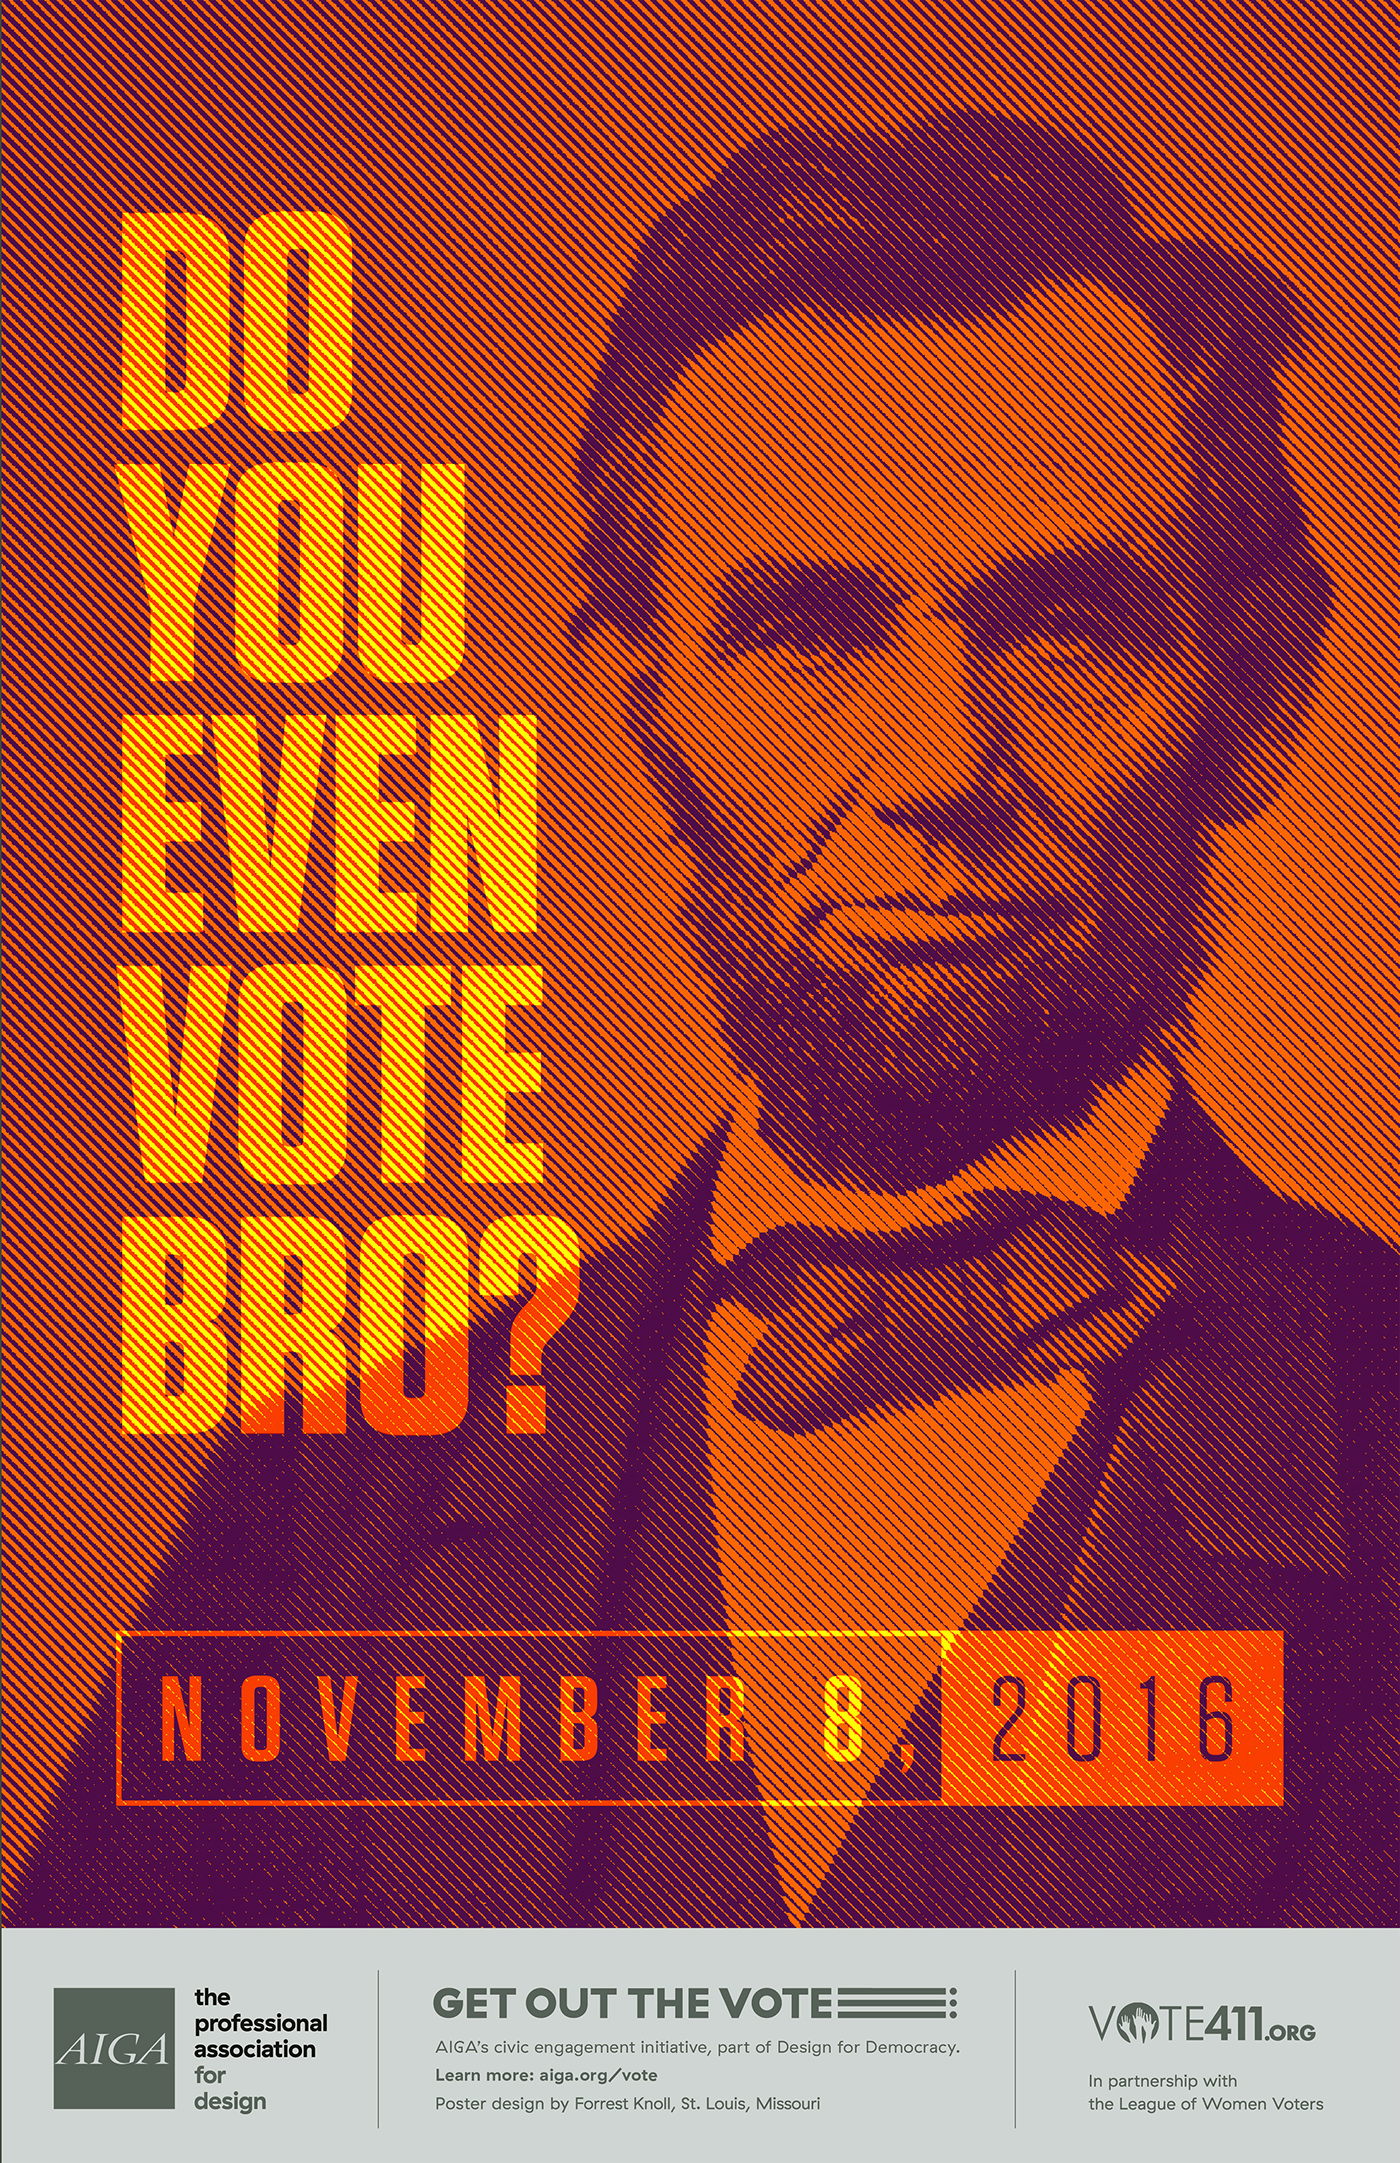 abe Abraham Lincoln vote aiga bro